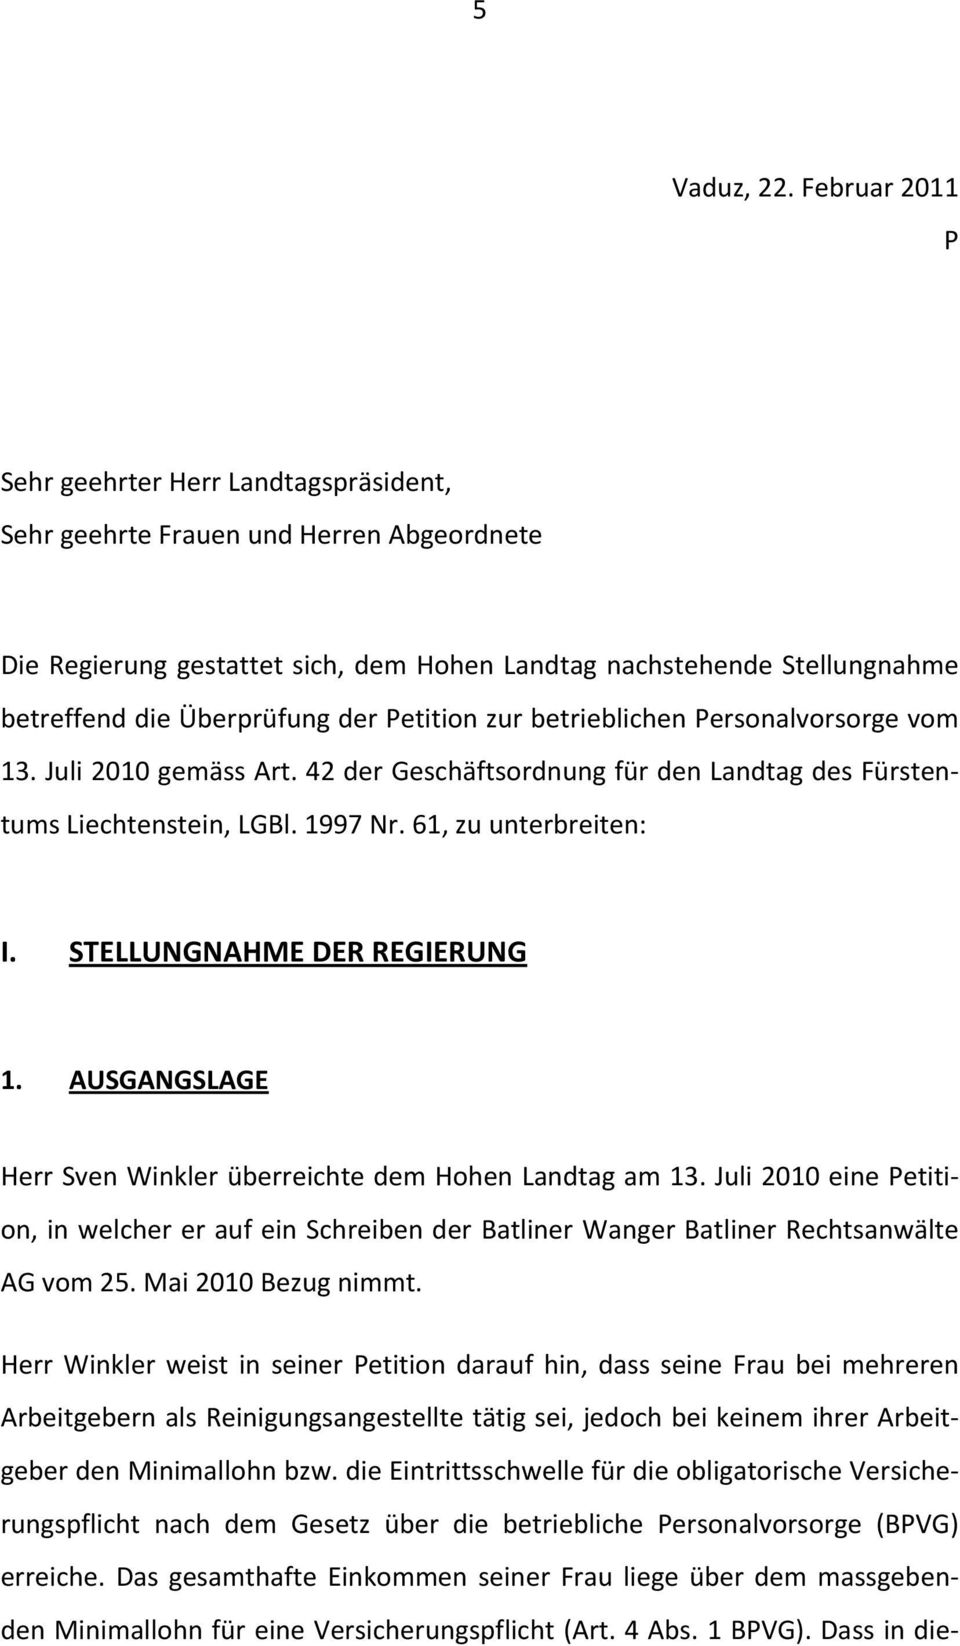 der Petition zur betrieblichen Personalvorsorge vom 13. Juli 2010 gemäss Art. 42 der Geschäftsordnung für den Landtag des Fürstentums Liechtenstein, LGBl. 1997 Nr. 61, zu unterbreiten: I.